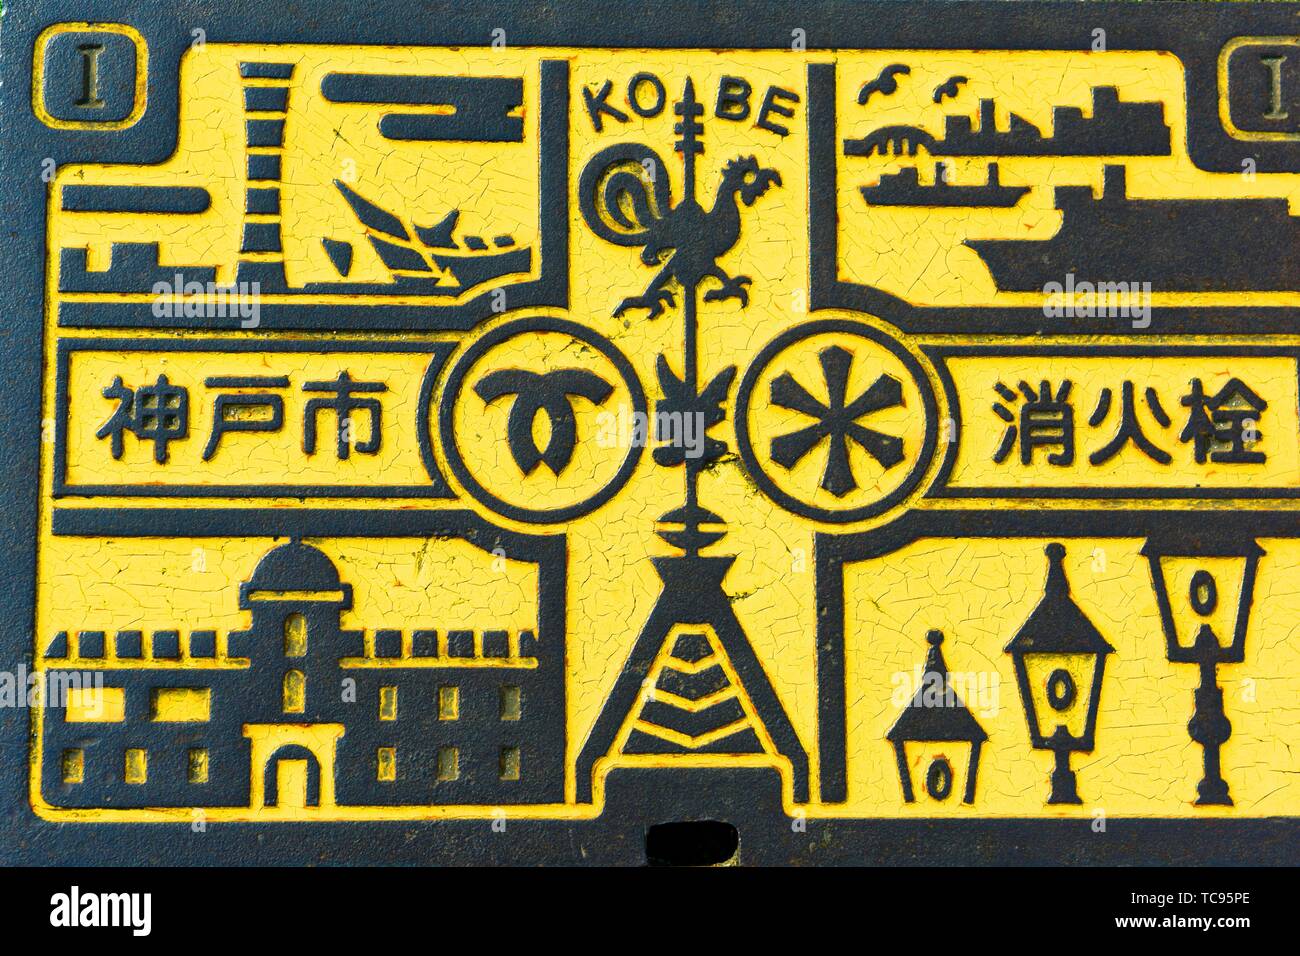 Les signes et les symboles qui représentent des lieux importants mis Kobe sur un trou le long d'une rue dans la ville de Kobe, Honshu, Japon, Asie. Banque D'Images